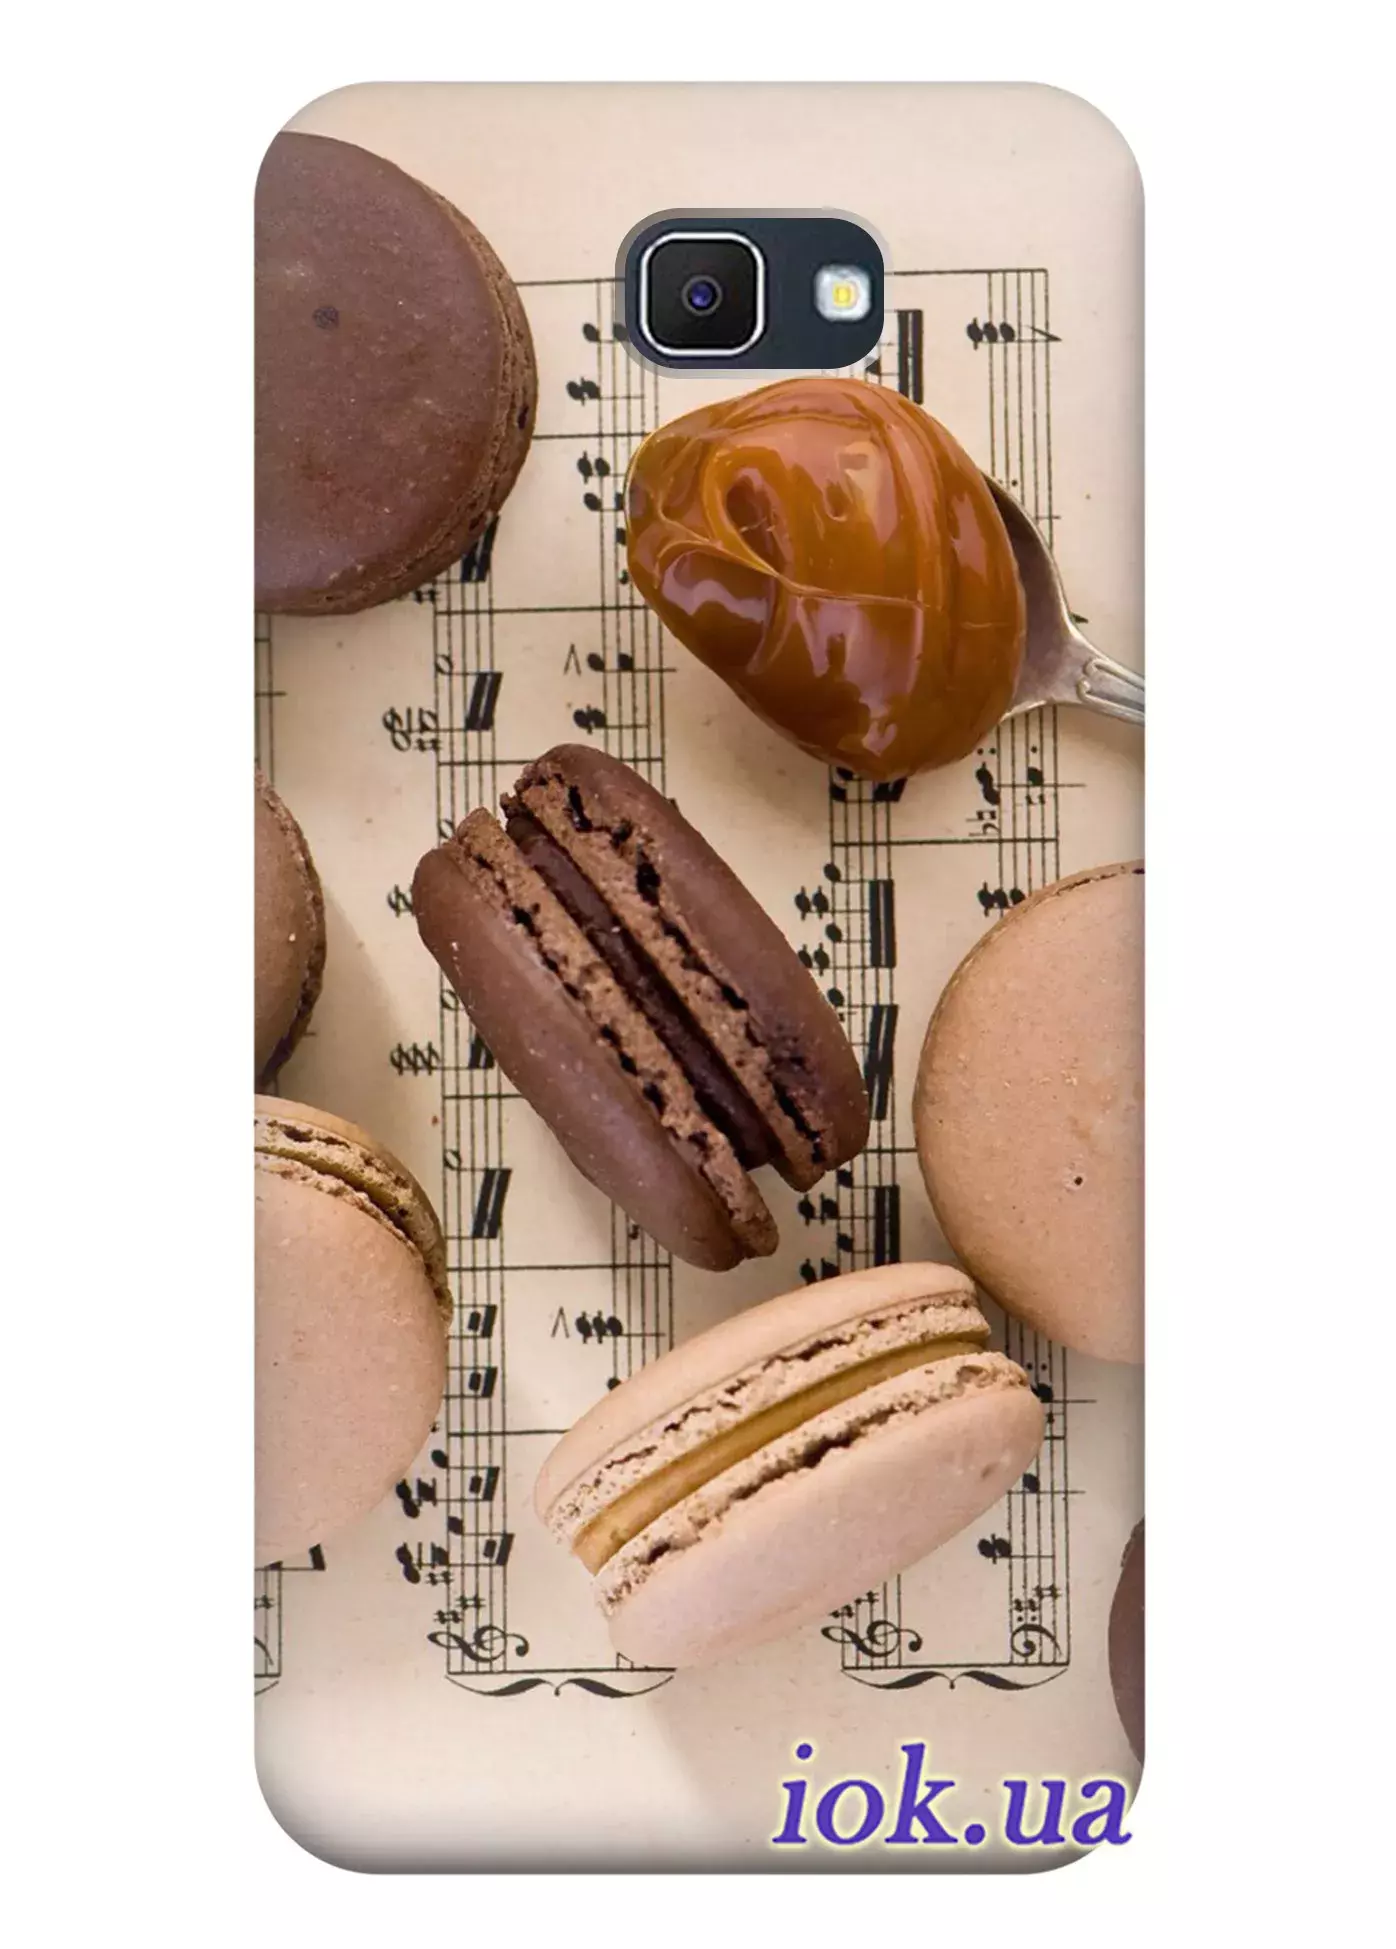 Чехол для Galaxy J5 Prime - Кофейные сладости